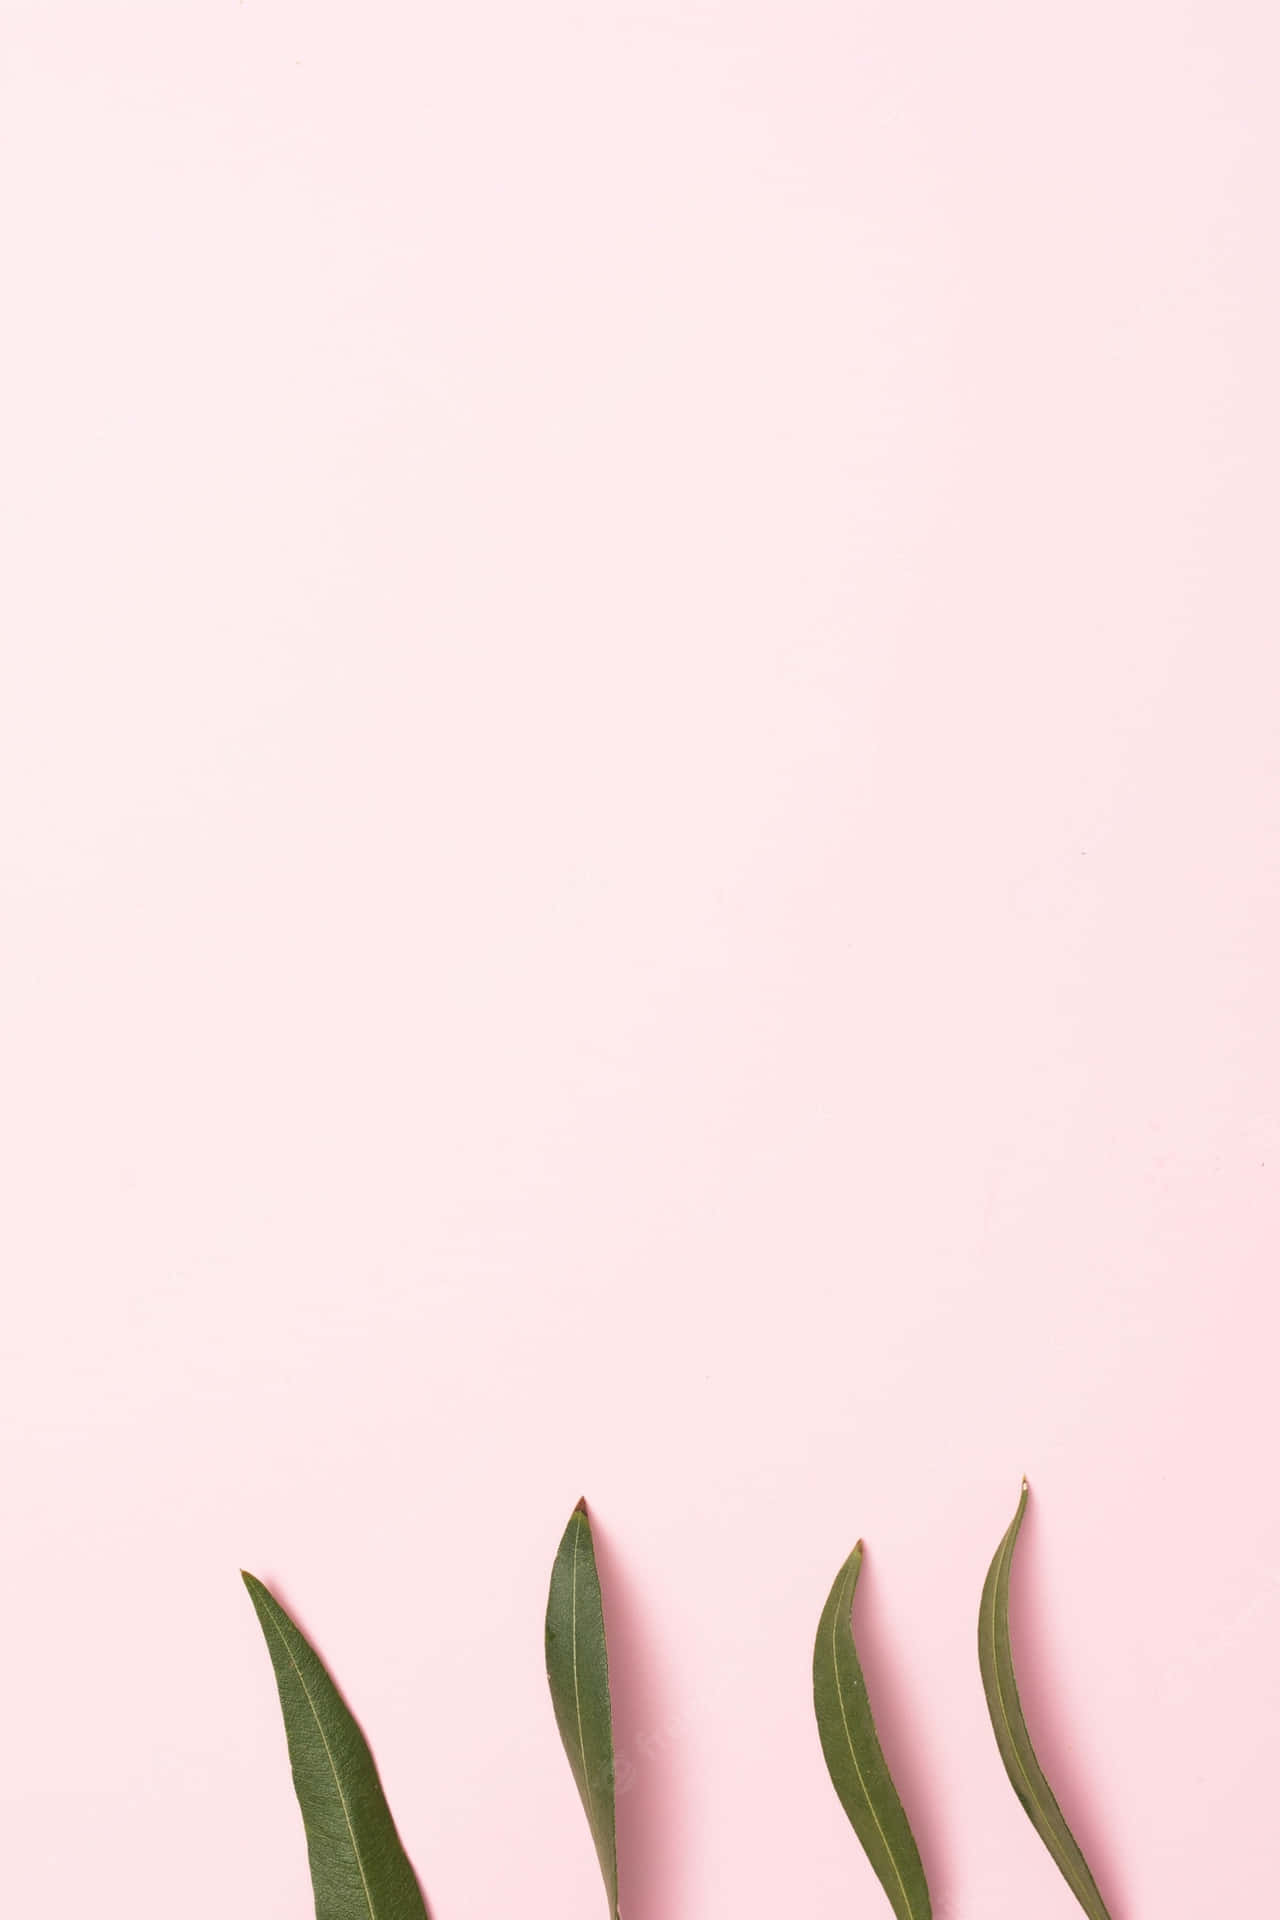 Einminimalistisches Bild Mit Leuchtenden Pinktönen Wallpaper